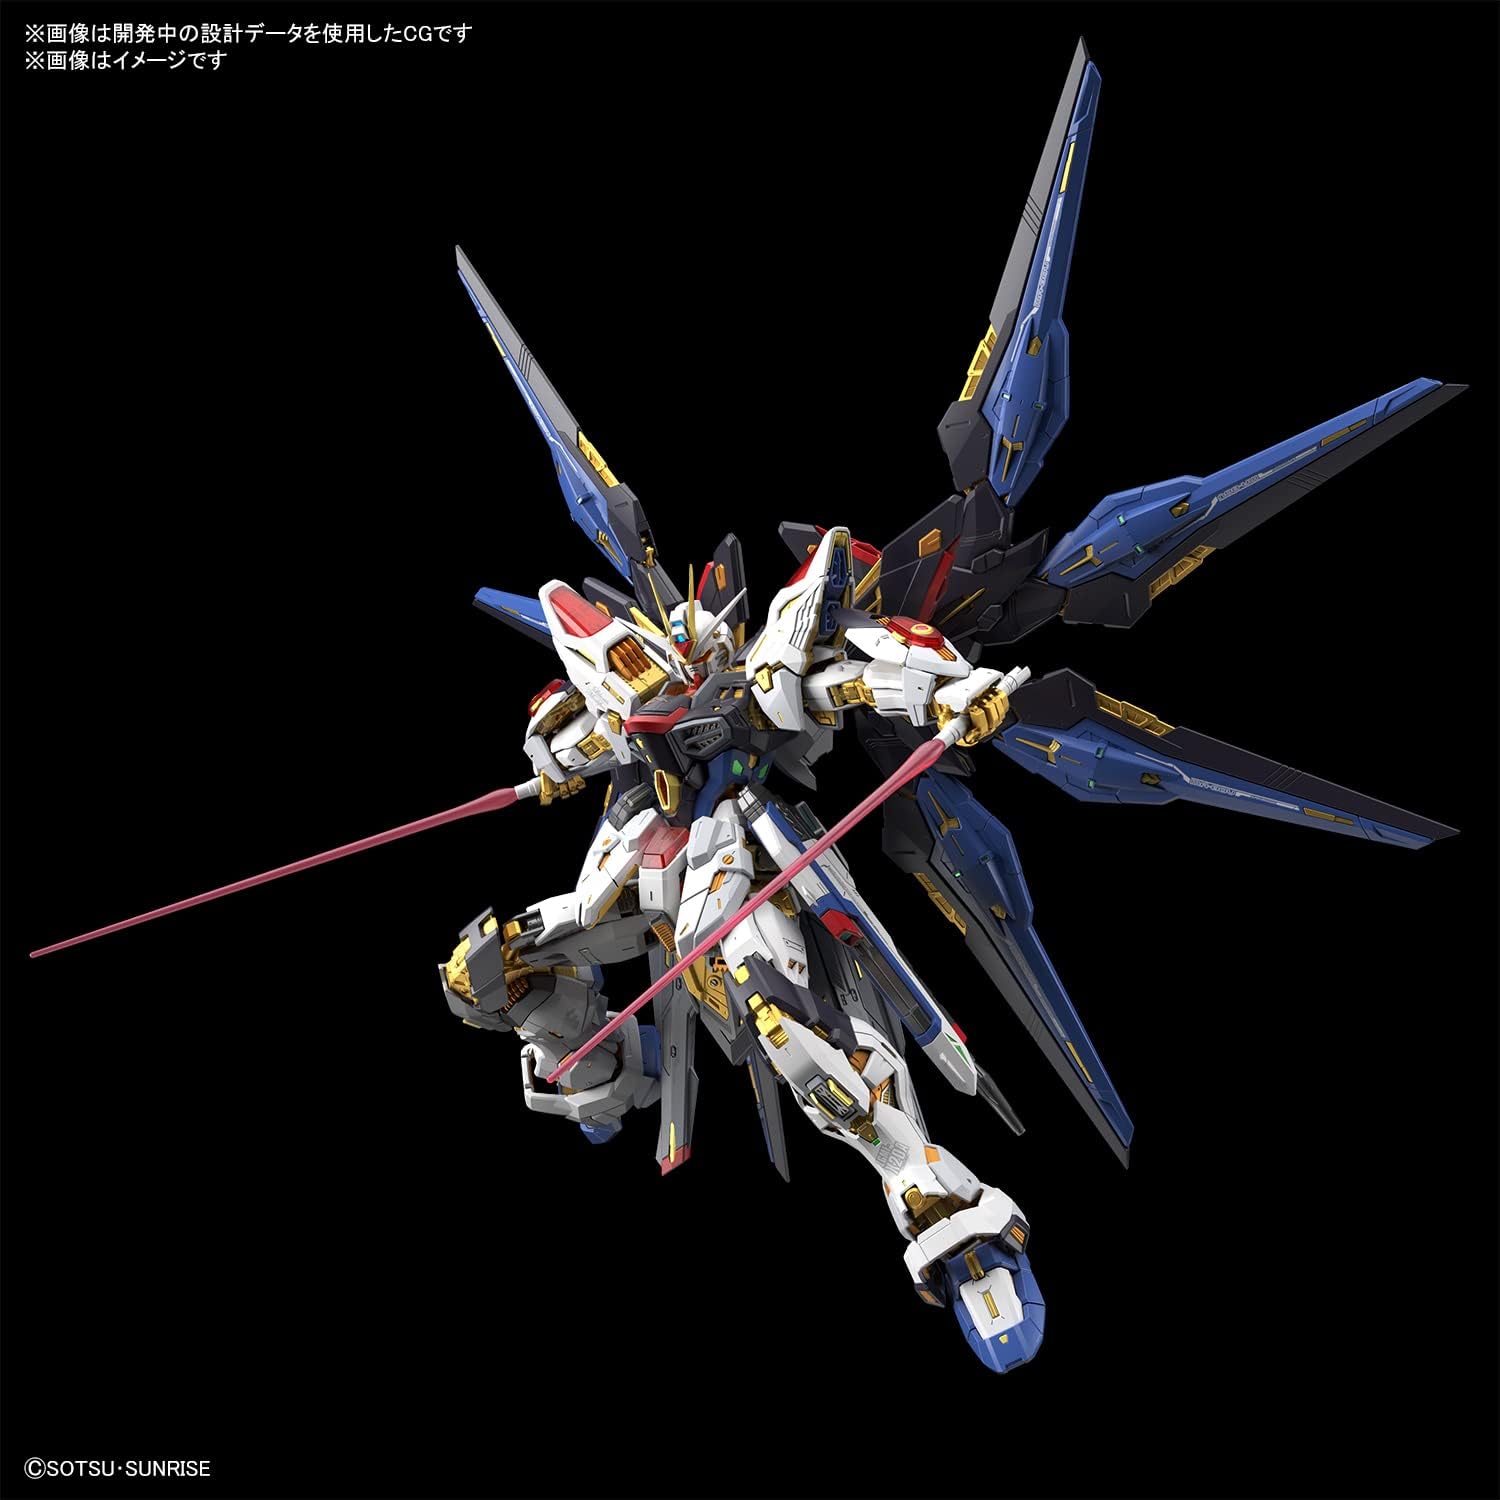 MGEX ZGMF - X20A Strike Freedom Gundam - TongDa